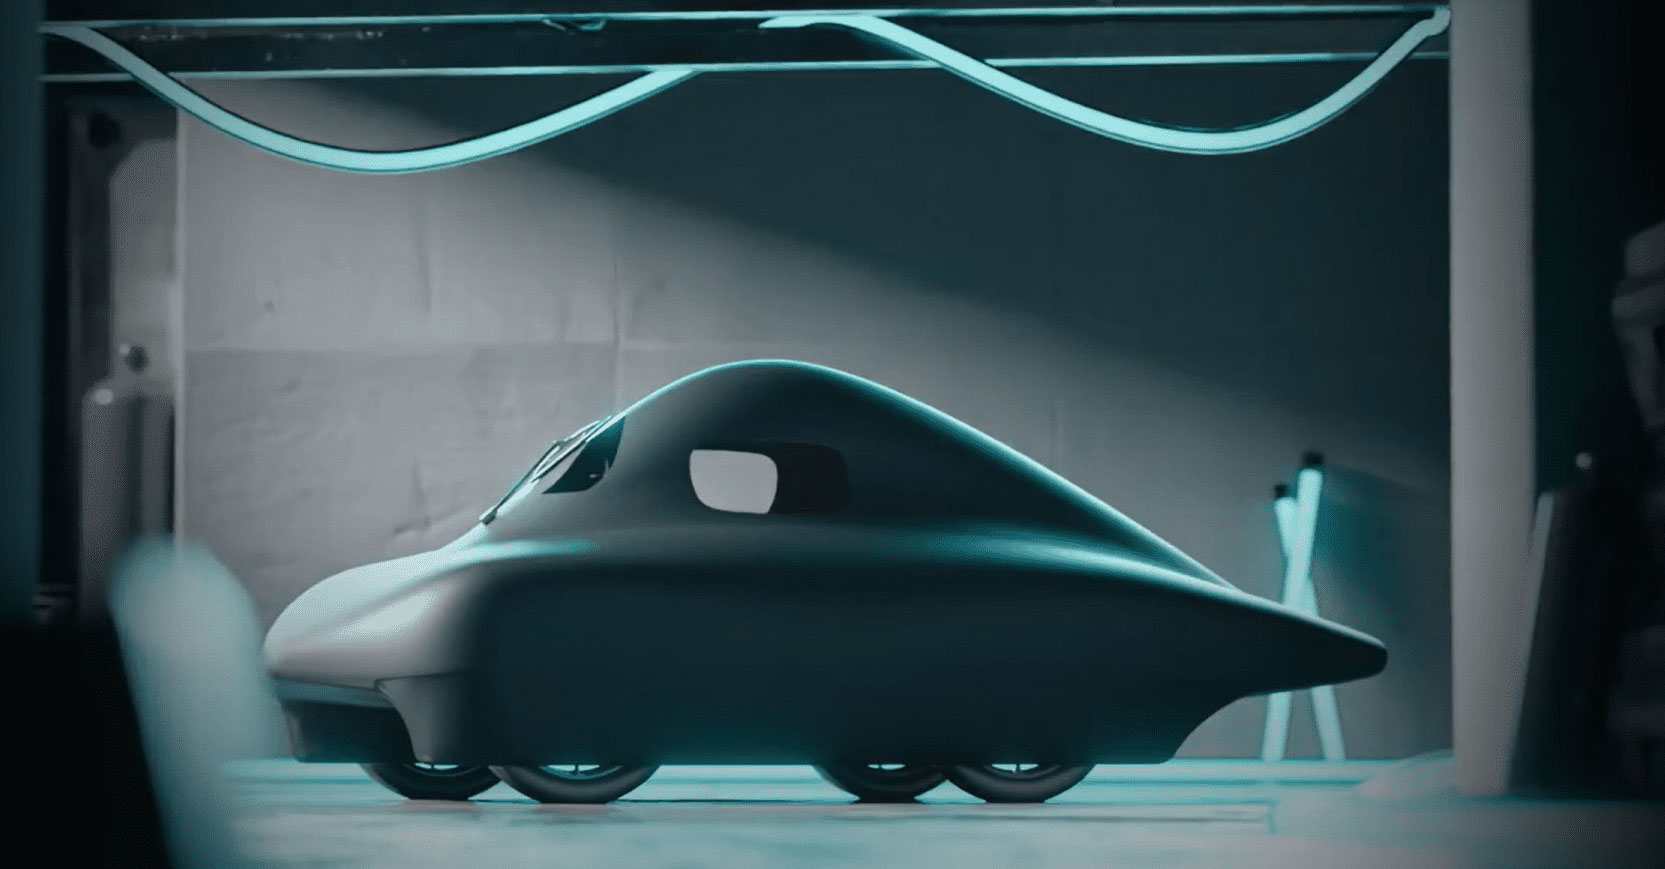 Ultra-efficiente, cette micro-voiture à hydrogène promet plus de 2000 km d'autonomie